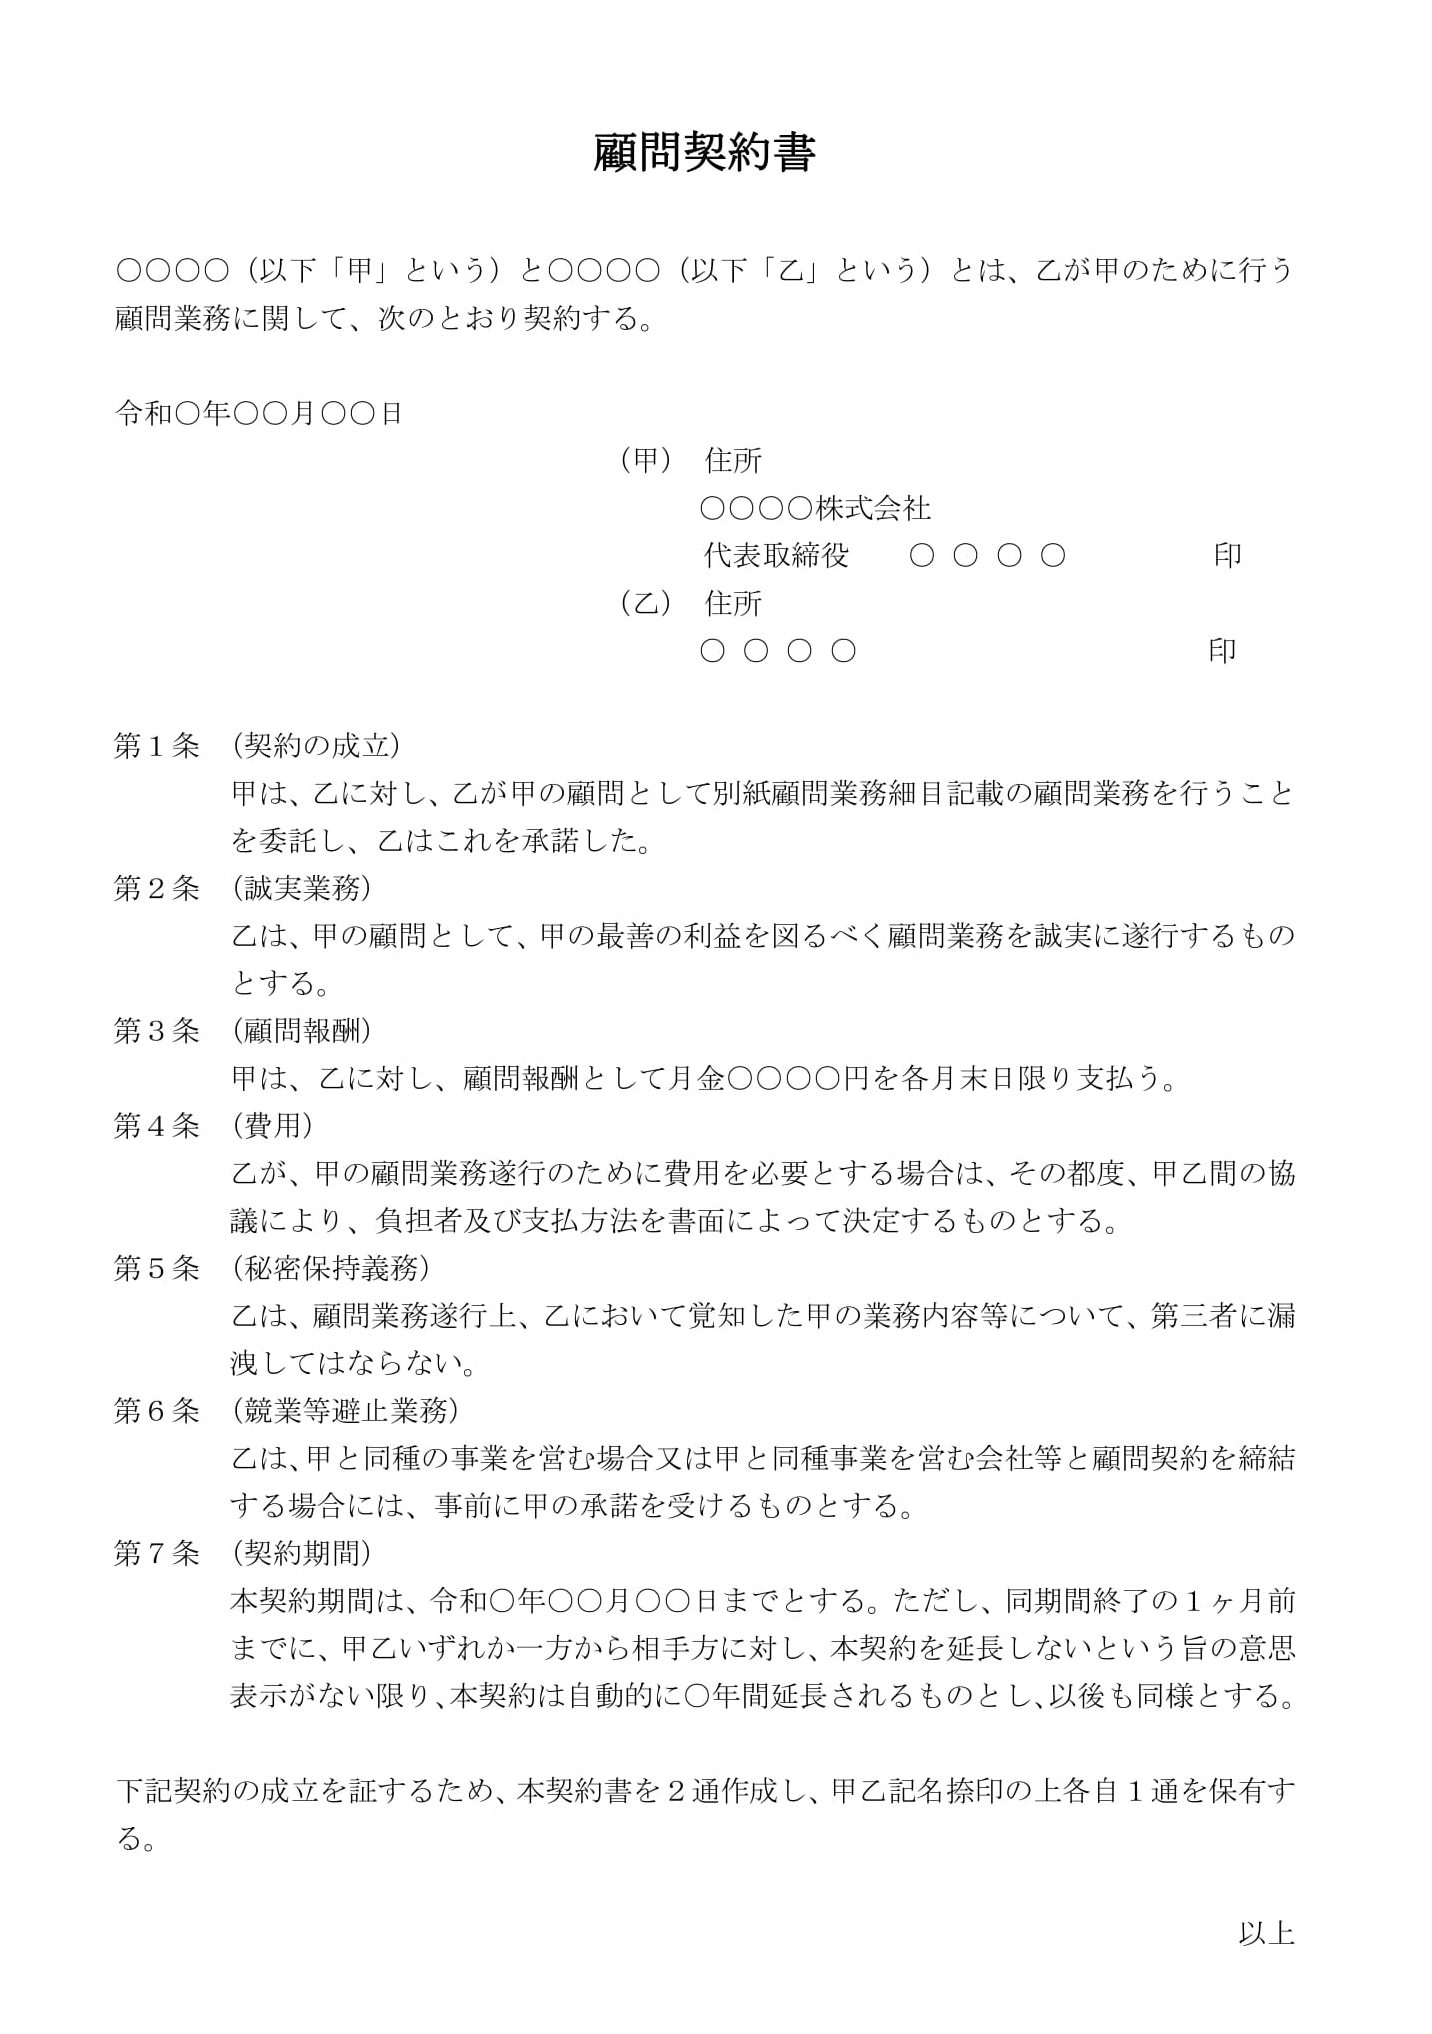 ビジネスフォーム 日本法令 動画解説付 社労士のための顧問契約・業務委託契約書式集 書式テンプレート210